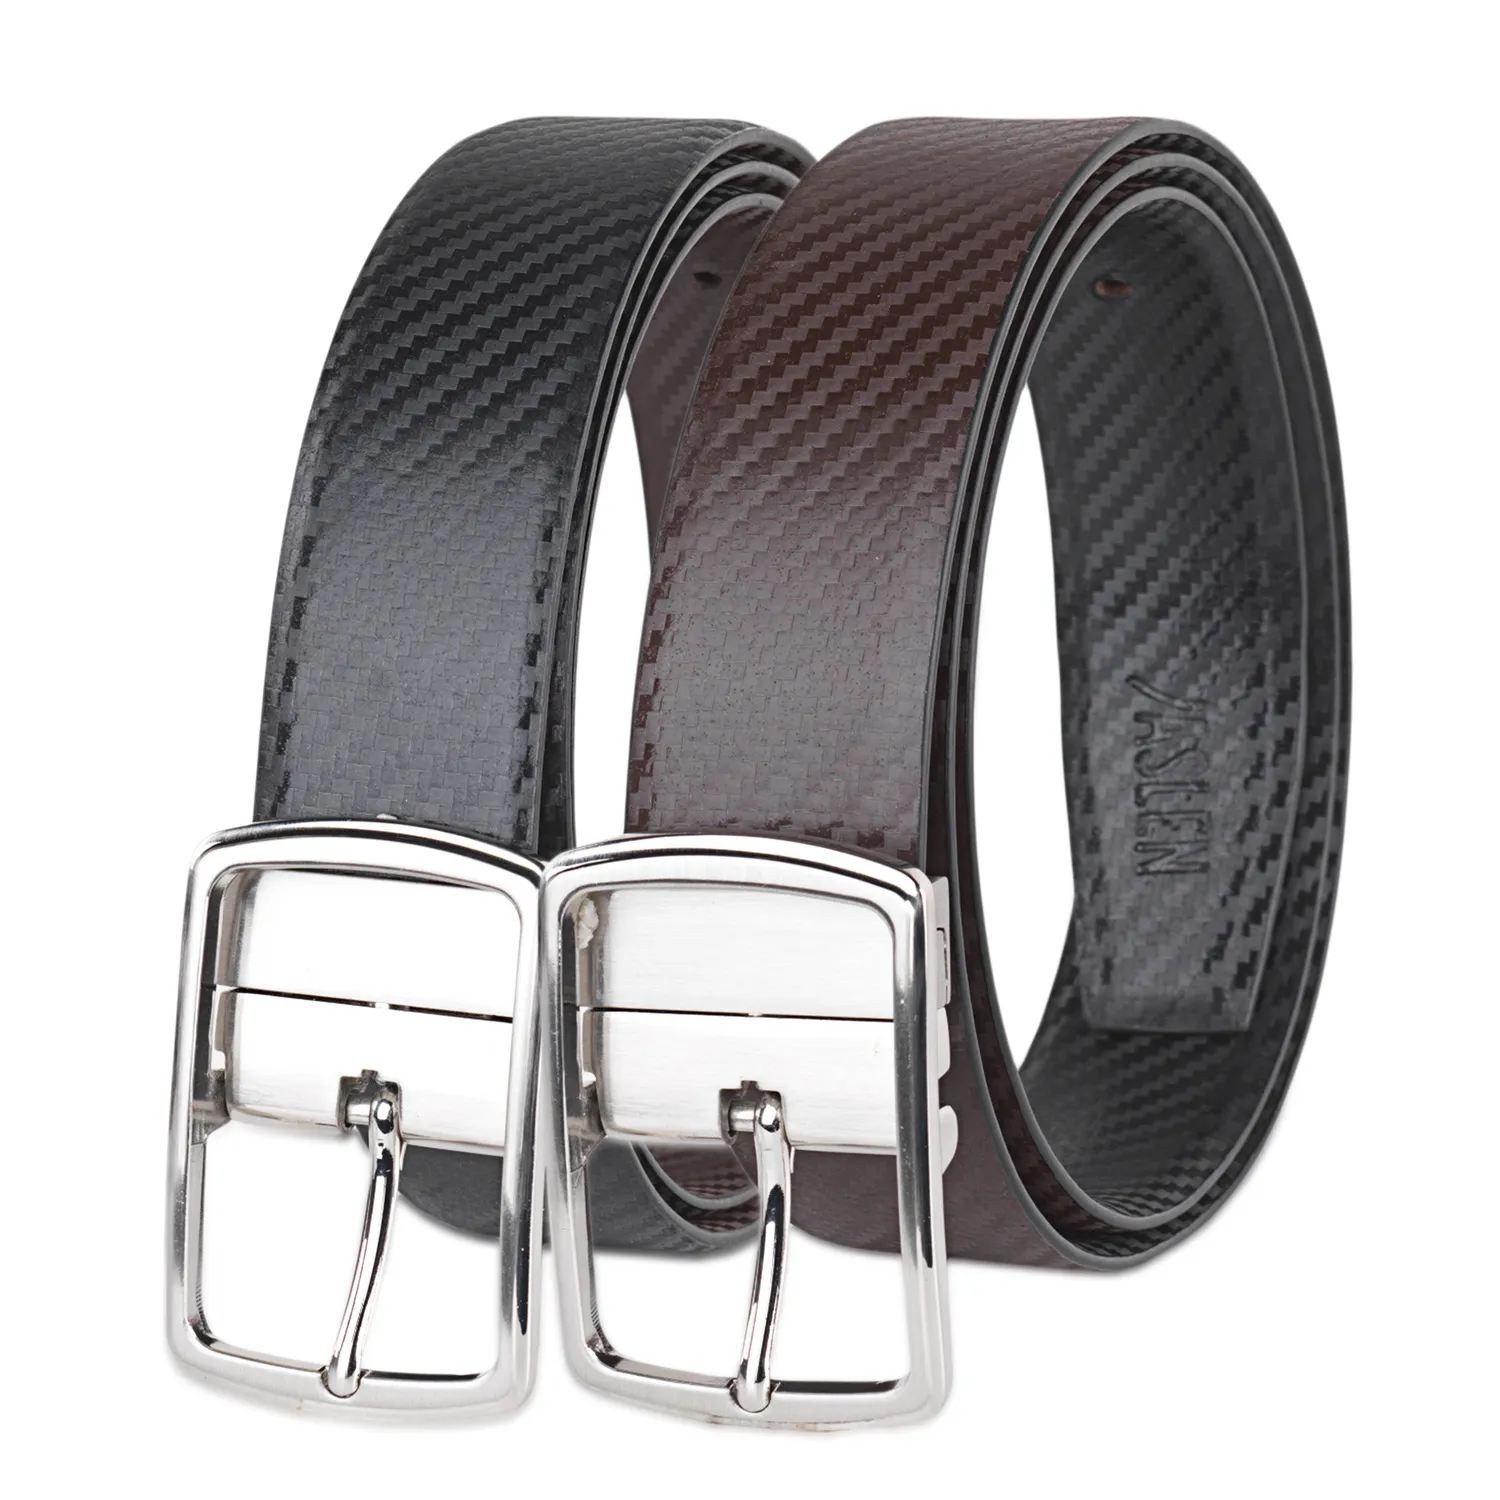 Cinturon Hombre - Cinturones De Piel Genuina Hebillas Cinturon De Metal - Cinturón Hombre. Cinturon Reversible - Elegantes Cinturones Hombre Cuero Marca JASLEN 49915 |